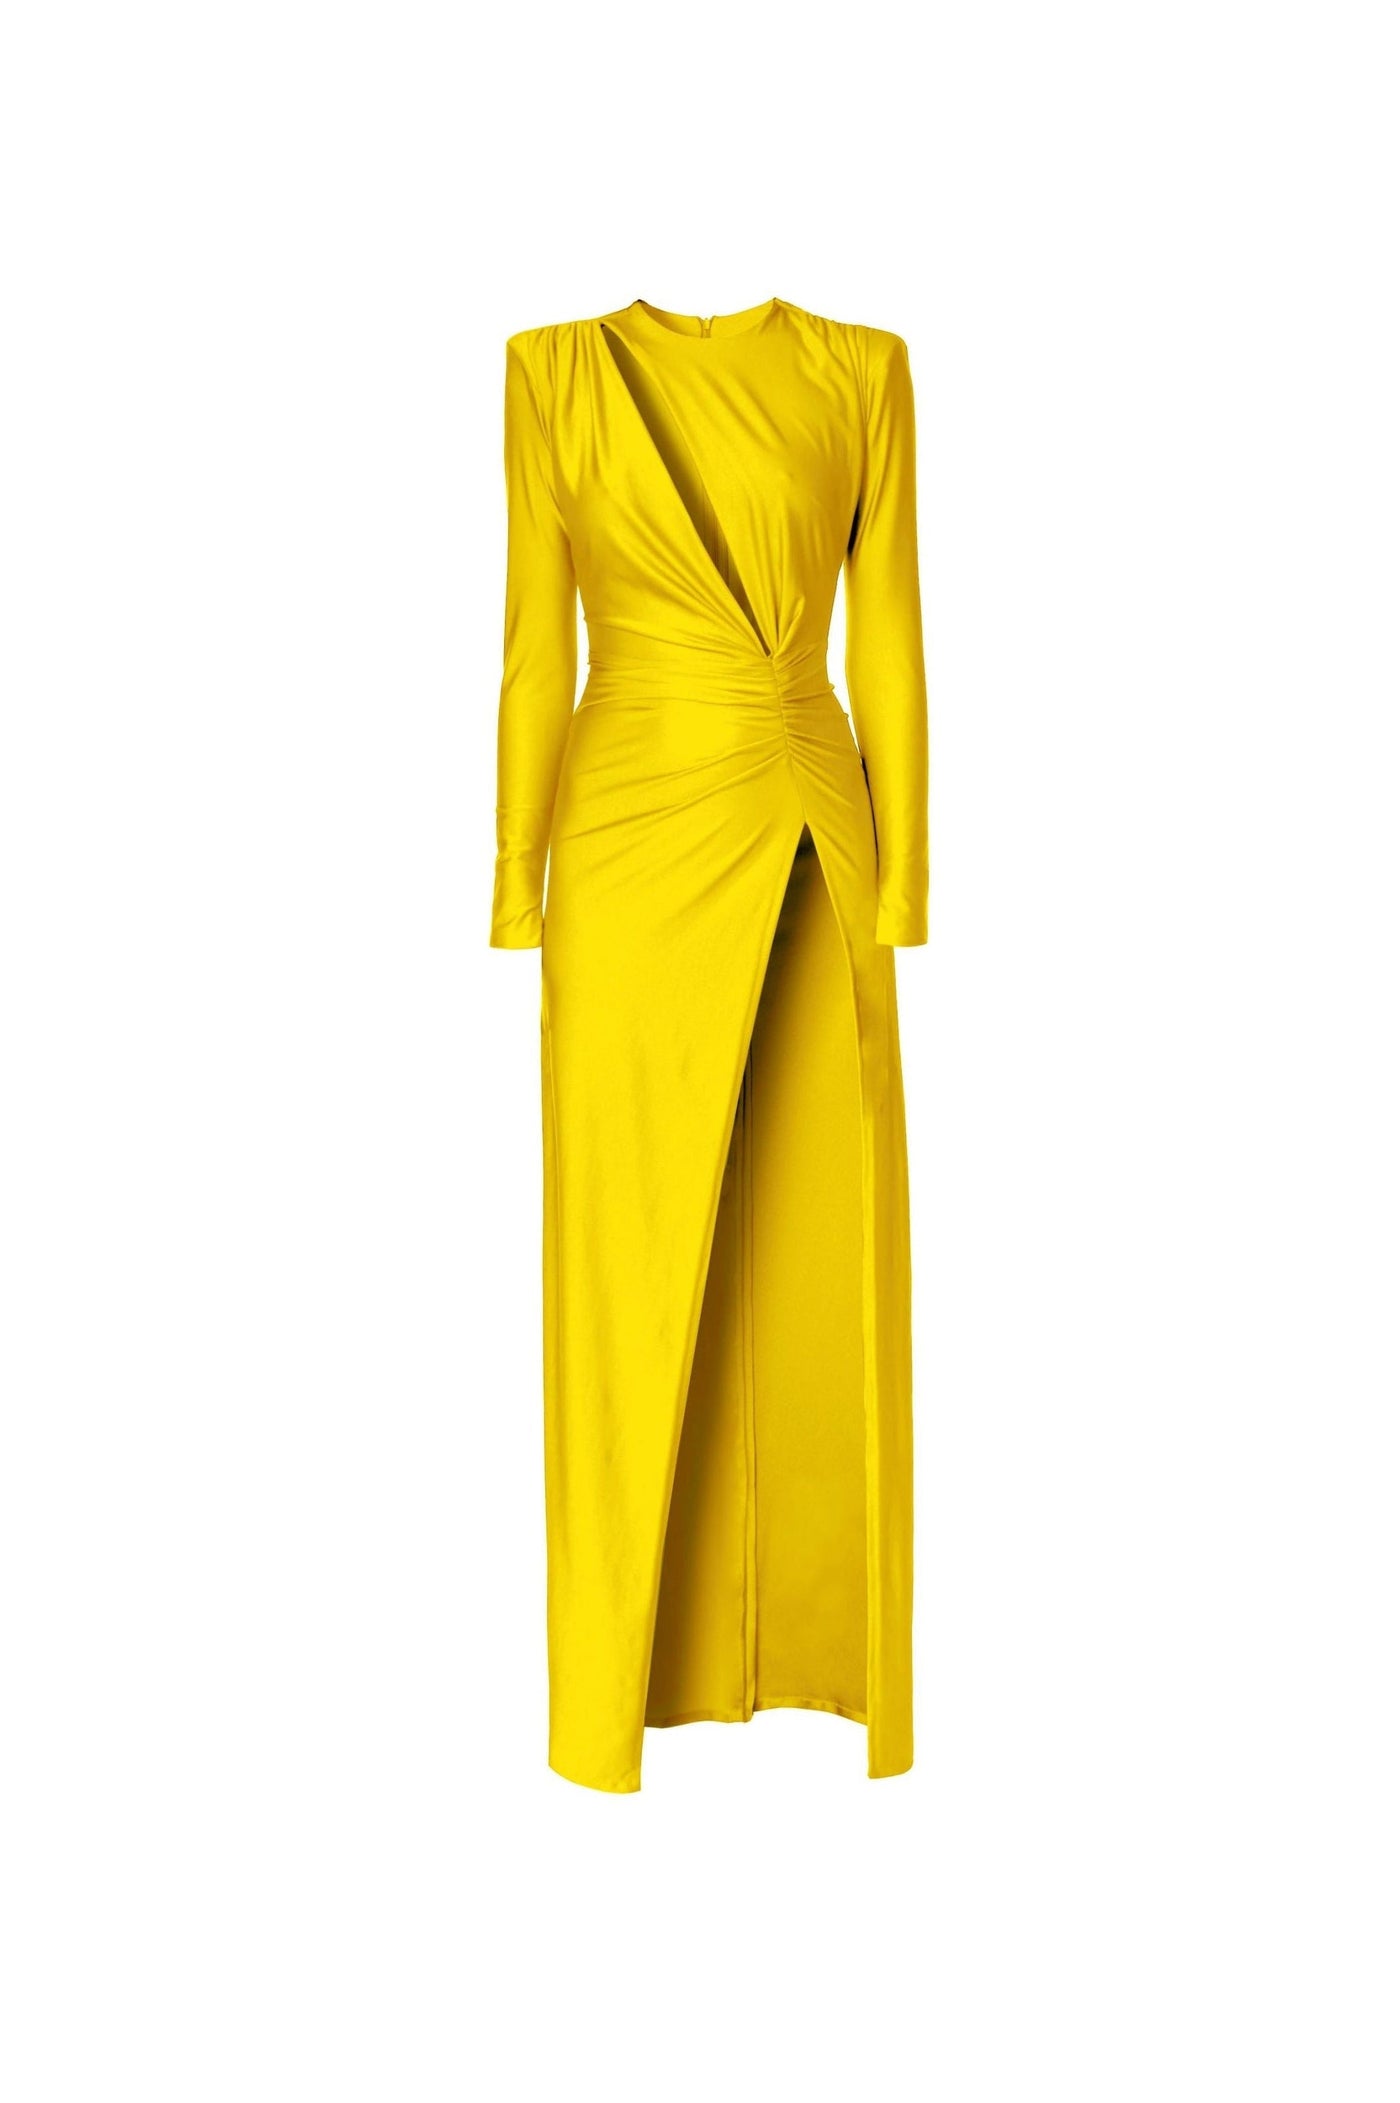 Adriana Super Yellow Dress